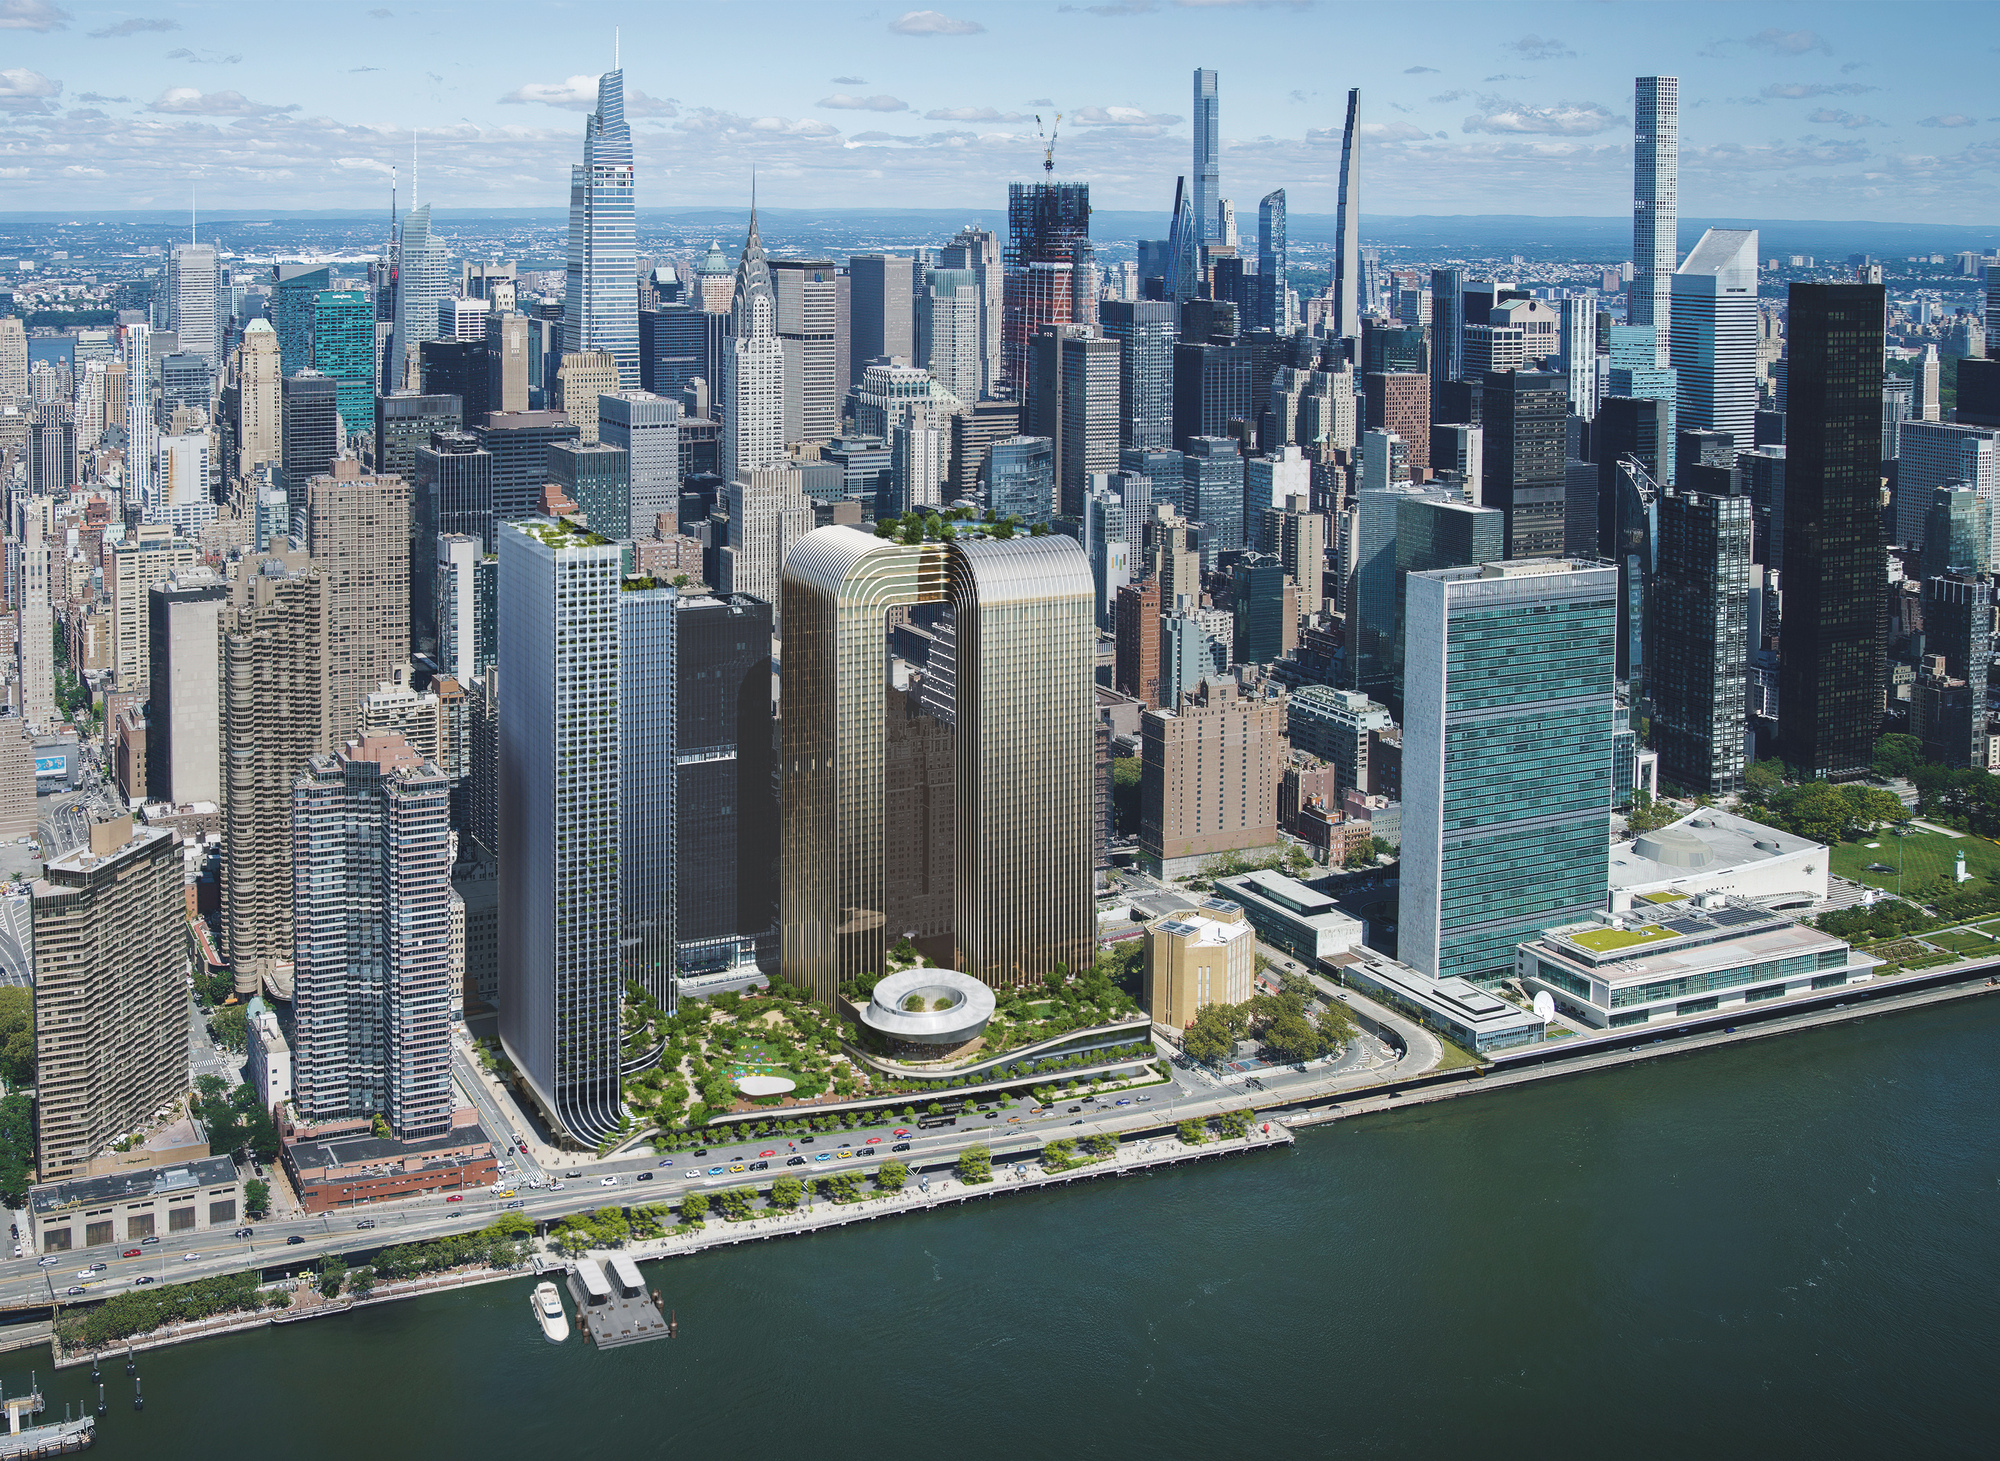 BIG Designs Консольные башни, окружающие площадь Свободы на набережной Манхэттена